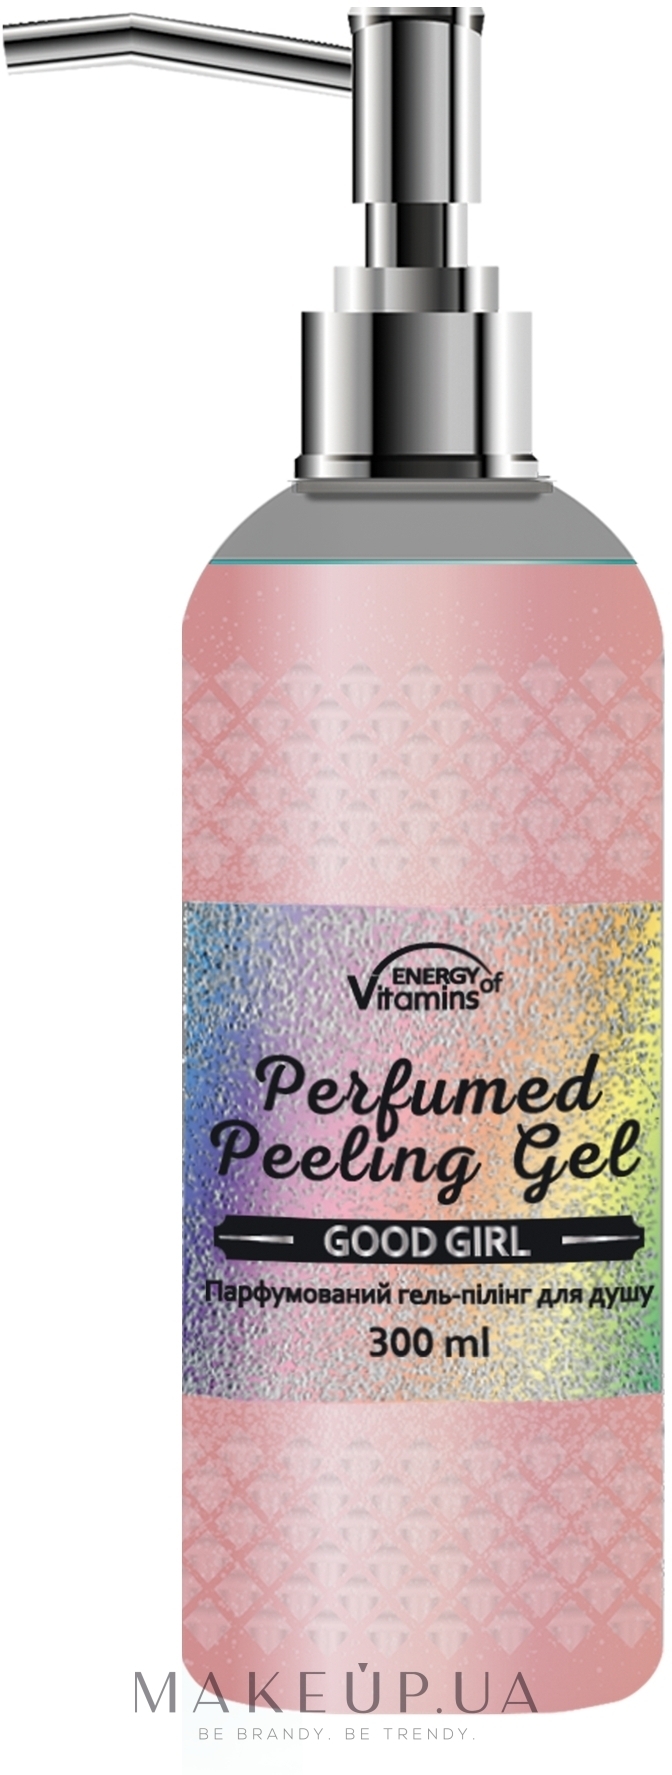 Парфюмированный гель-пилинг для душа - Energy of Vitamins Perfumed Peeling Gel Good Girl — фото 300ml